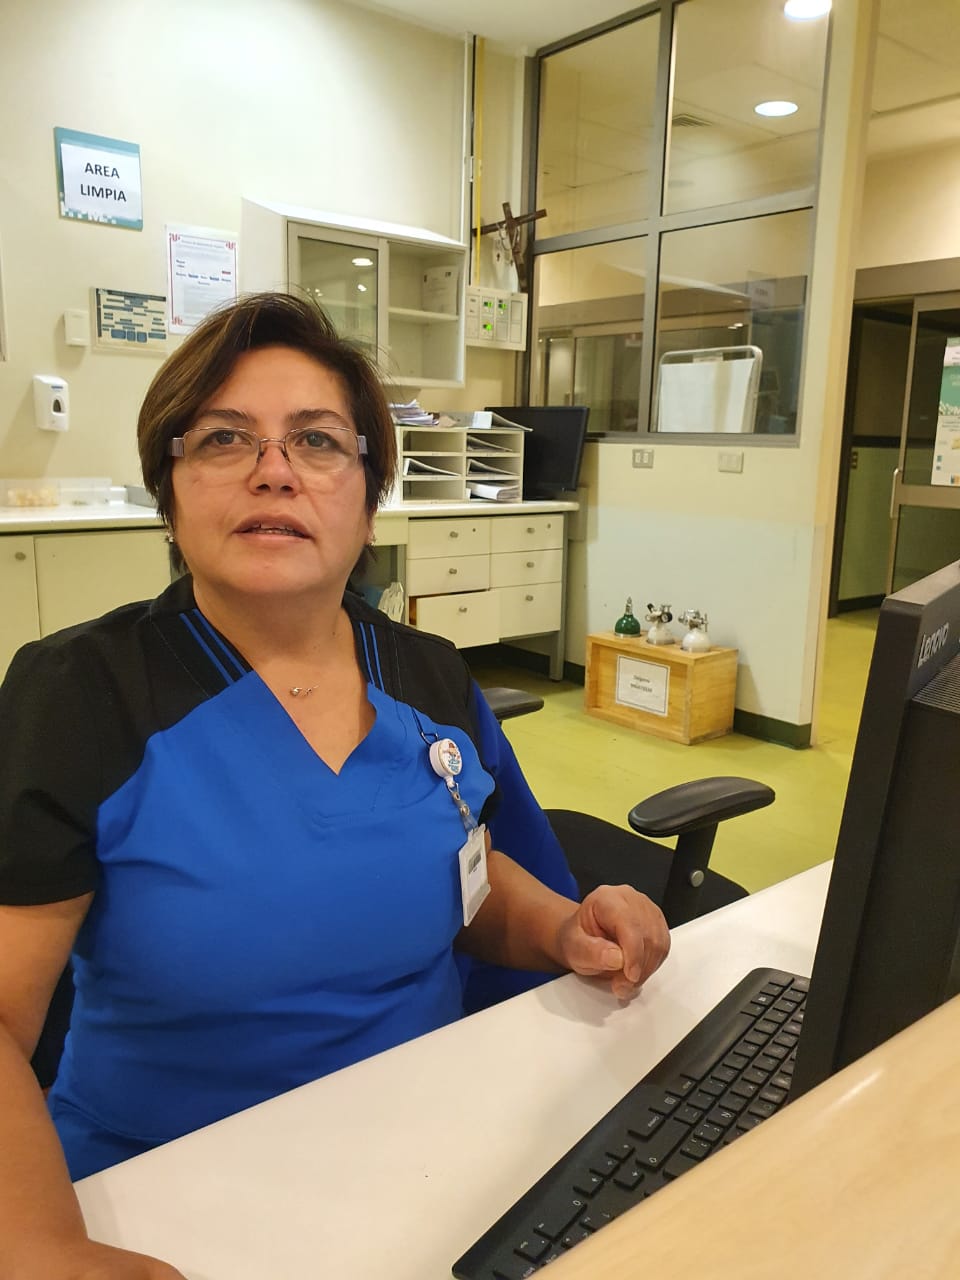 "Si llega a caer enfermo, no le quepa duda que lo vamos a atender y saldrá adelante" Marcela Salina, Técnico en Enfermería, Unidad de Cuidados Intensivos, Hospital de Puerto Montt